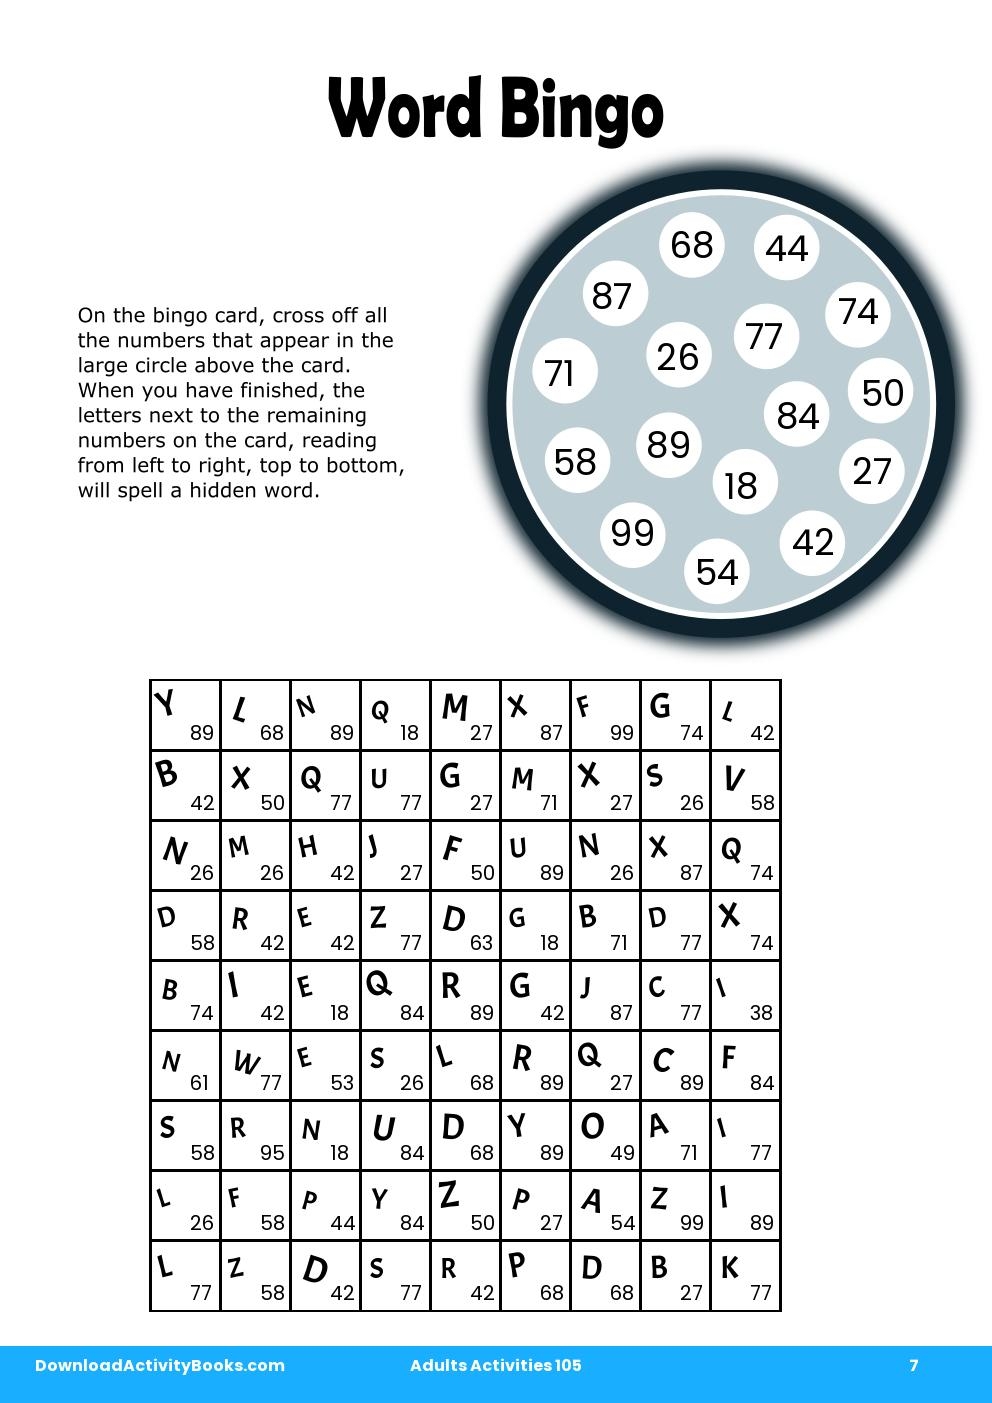 Word Bingo in Adults Activities 105